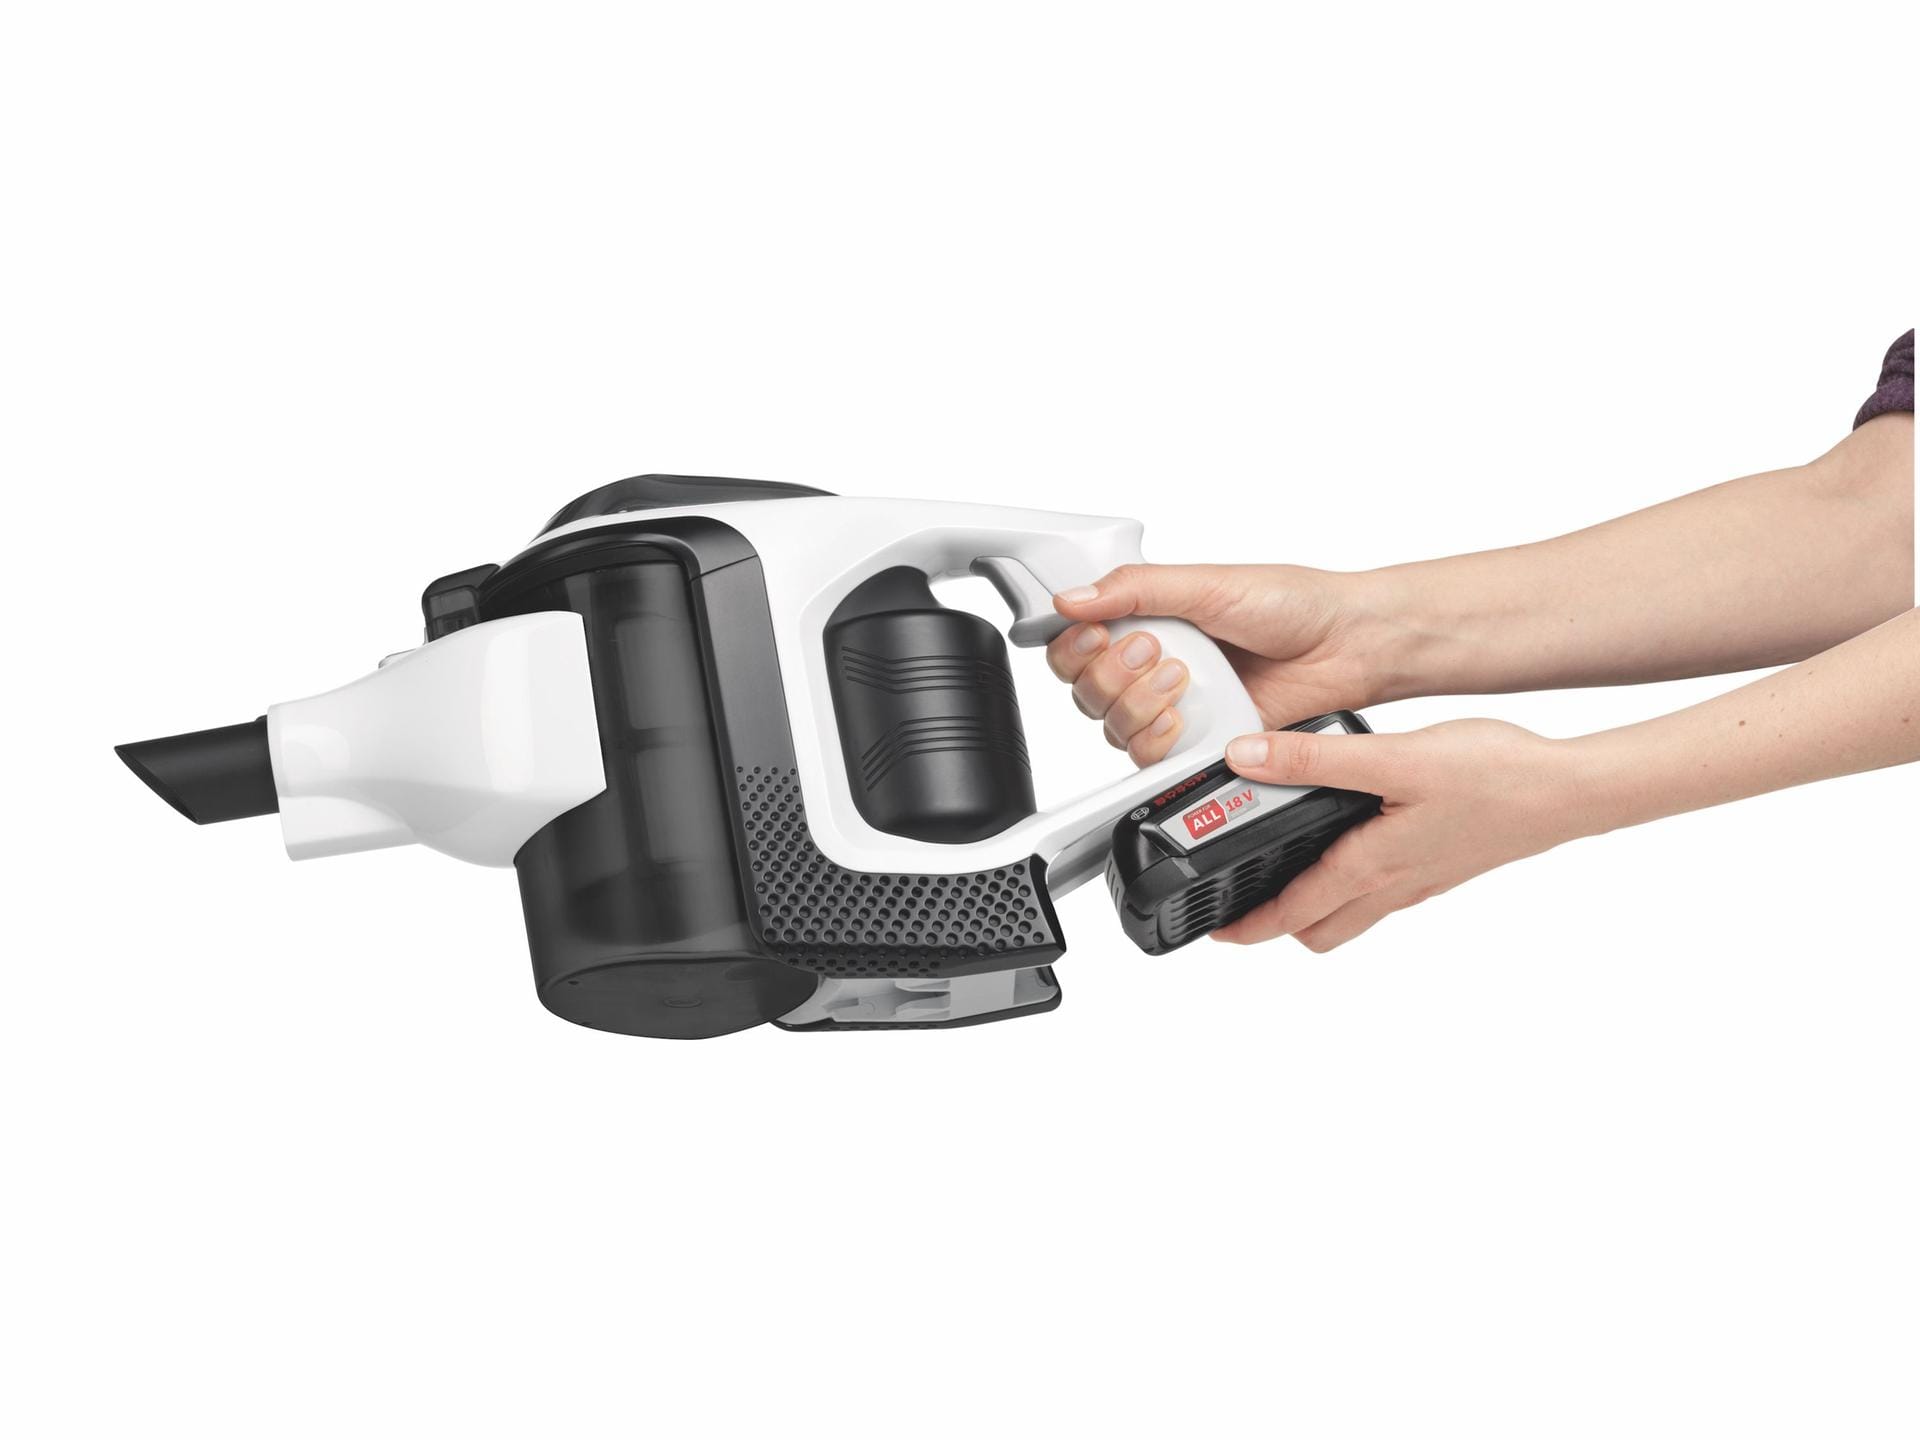 Boschs neuer Handstaubsauger Unlimited bezieht seine Energie aus einen Akku, der auch in anderen Geräten des Herstellers eingesetzt werden kann.